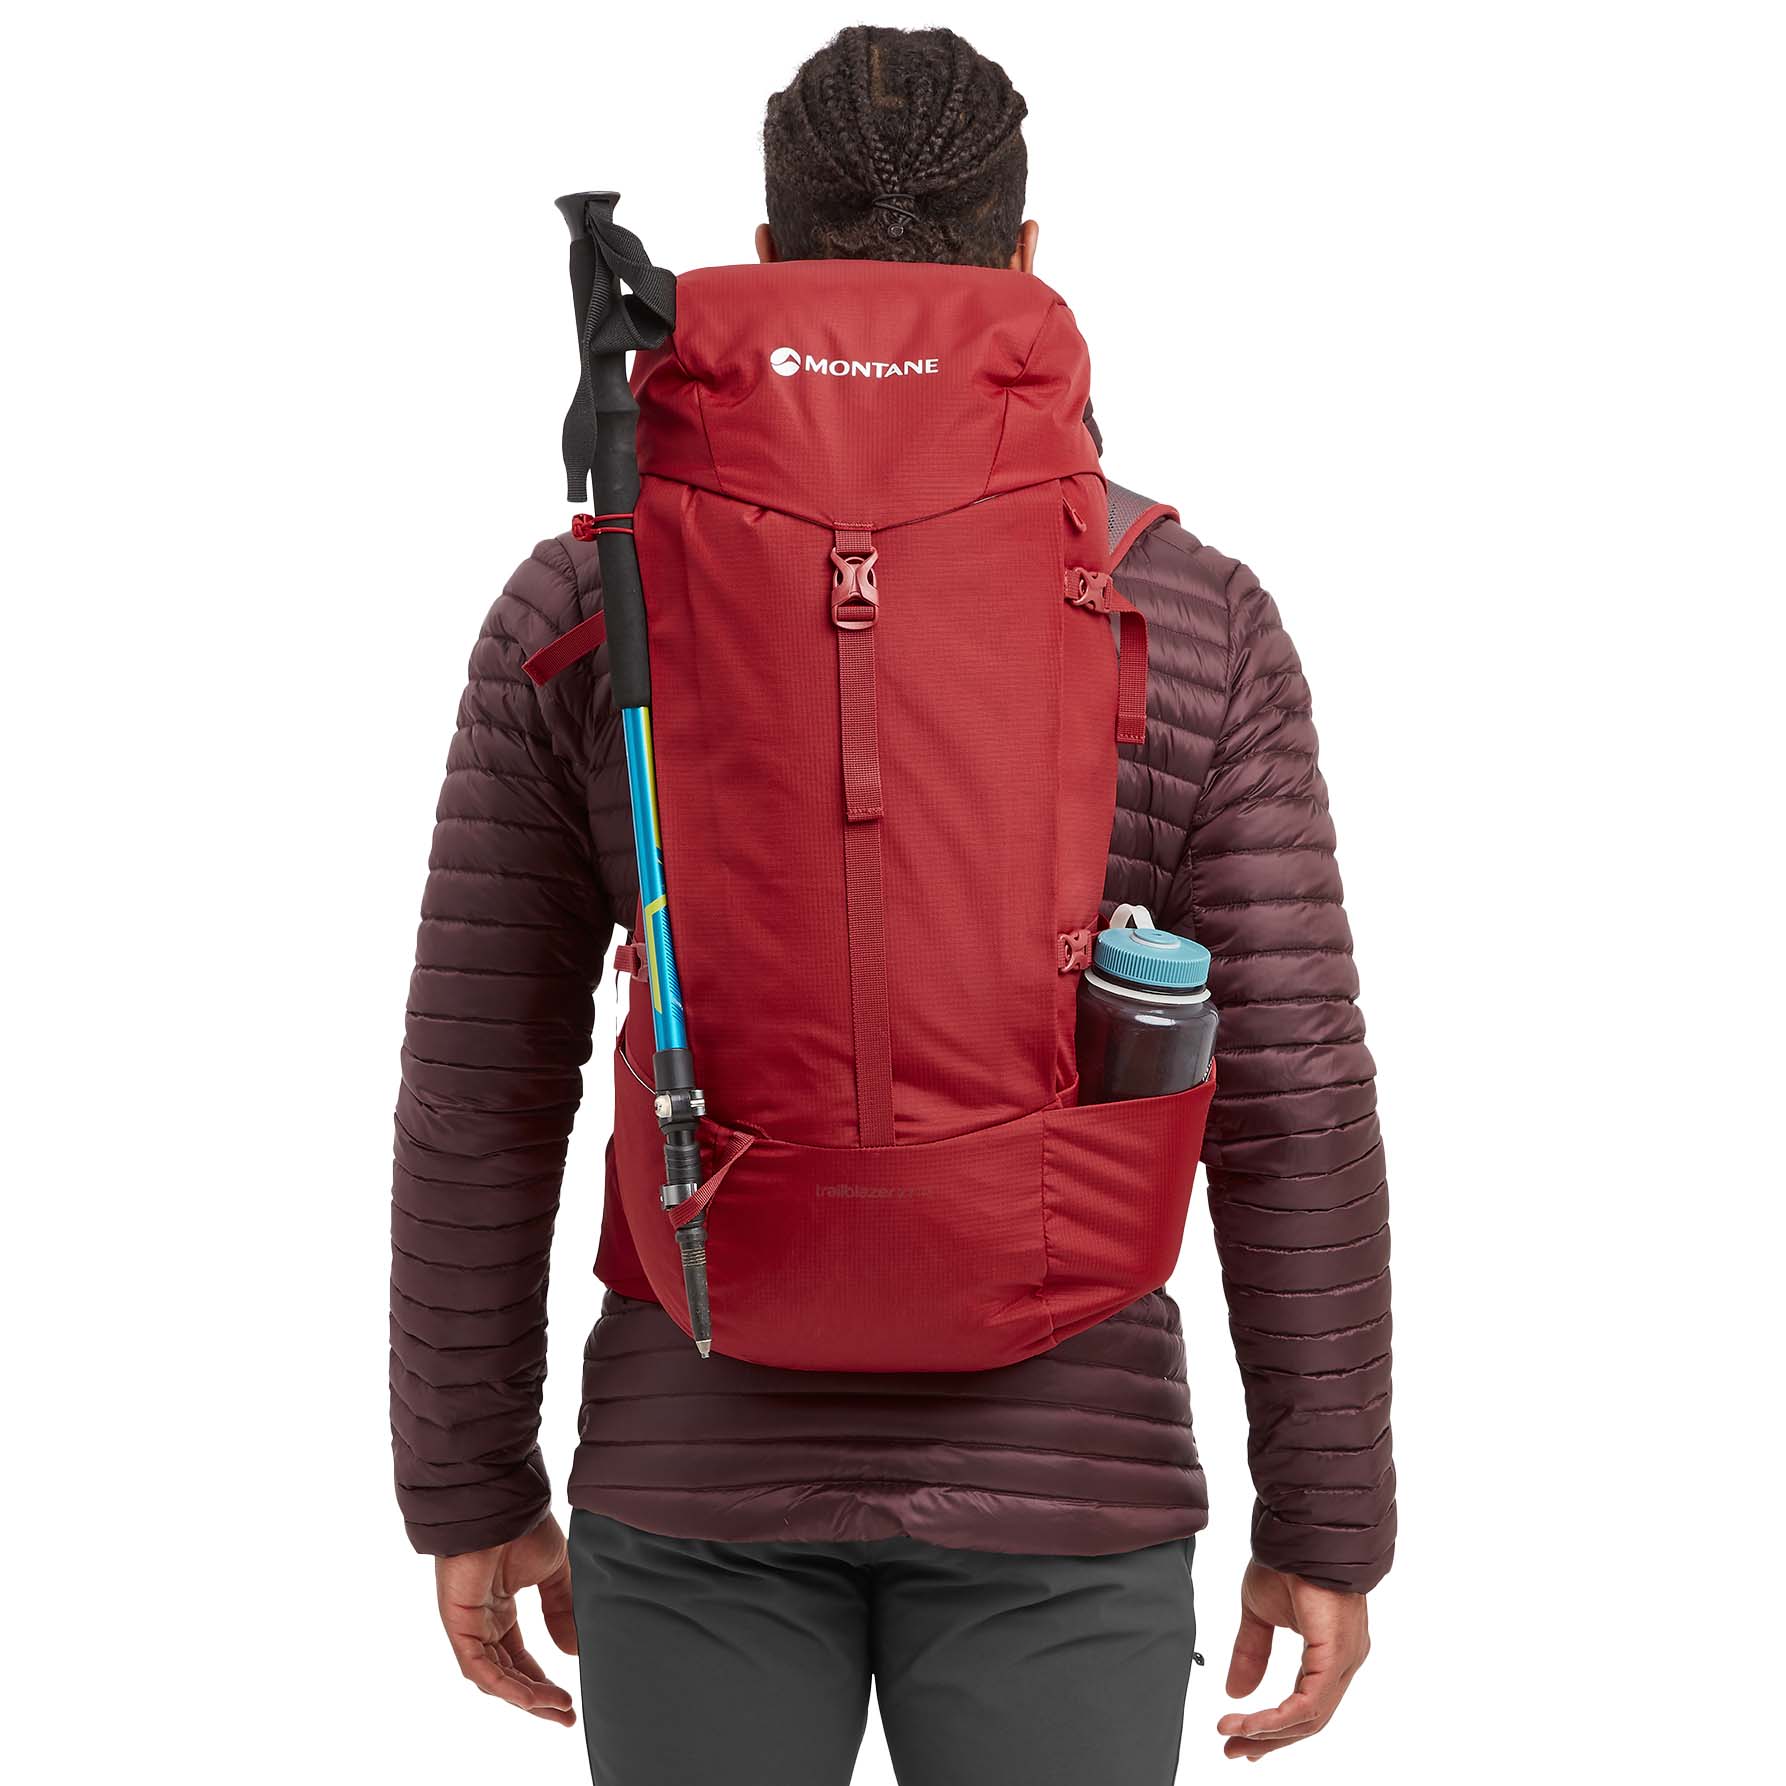 Montane Trailblazer XT 35 Trekking Backpack